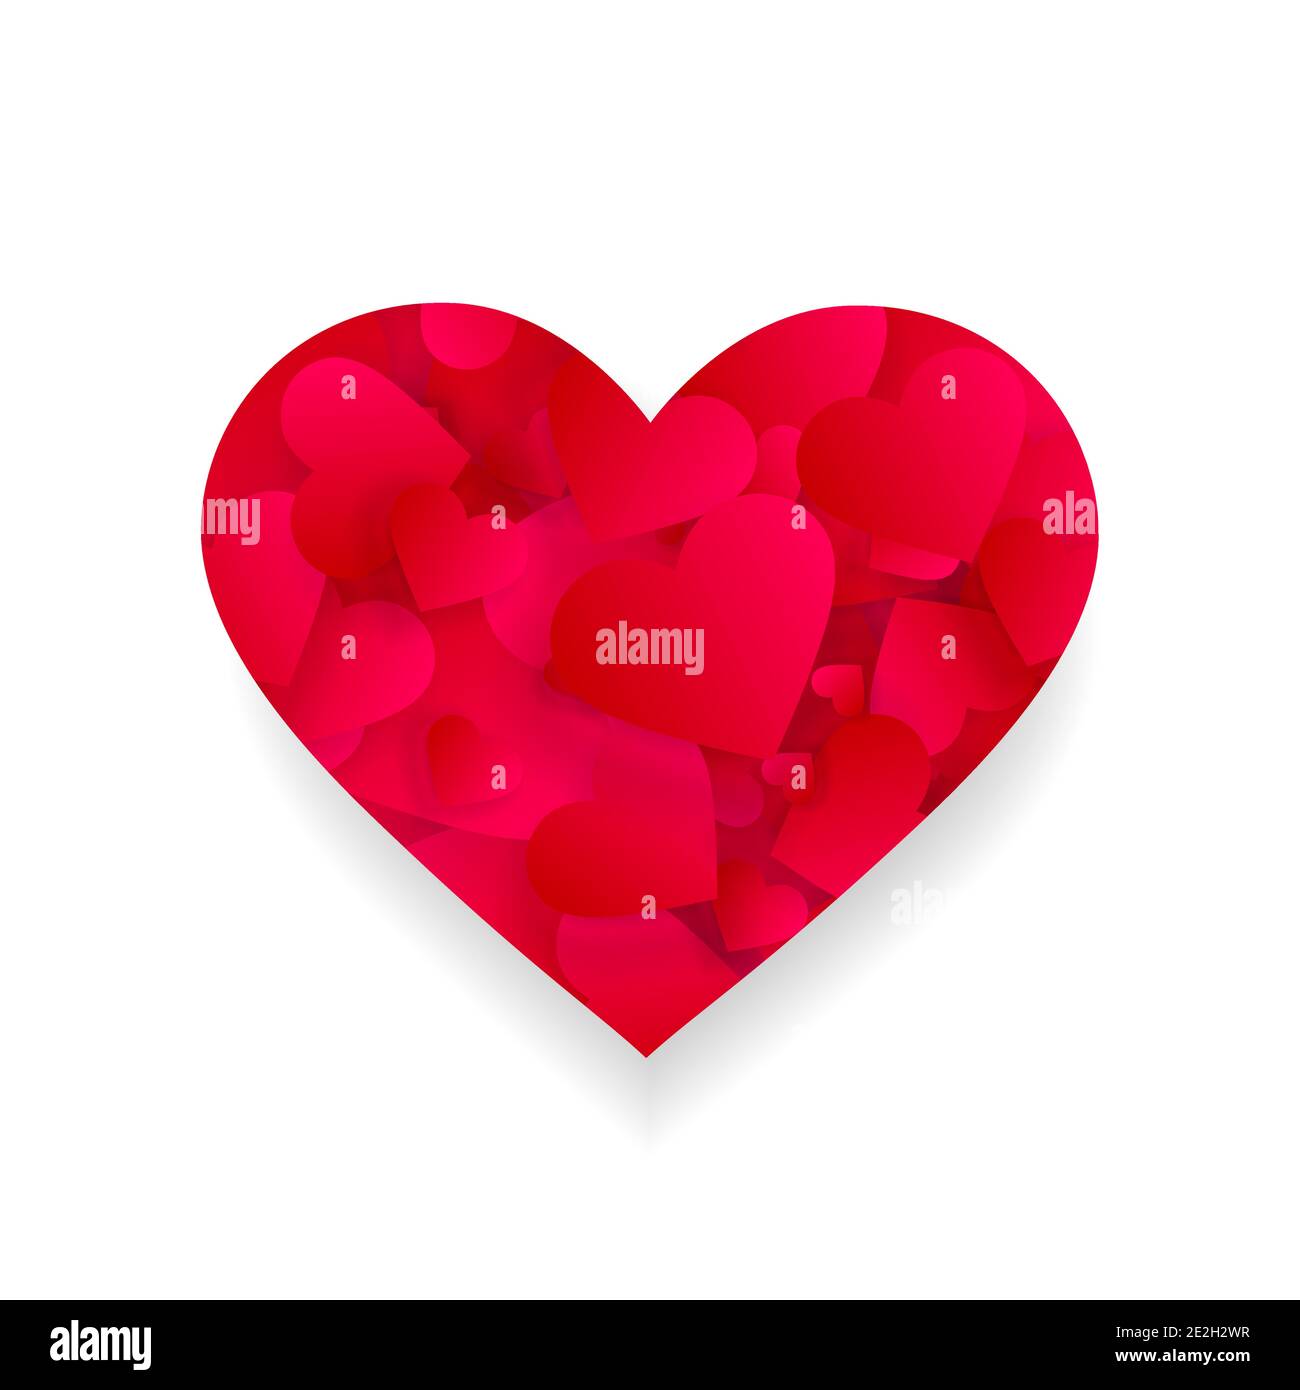 Red Heart 3d Effekt Form, Symbol mit kleinen Herzen oder Blütenblätter innen isoliert auf weißem Hintergrund. Liebe, Ehe, Romantik-Element für valentinstag oder Stock Vektor